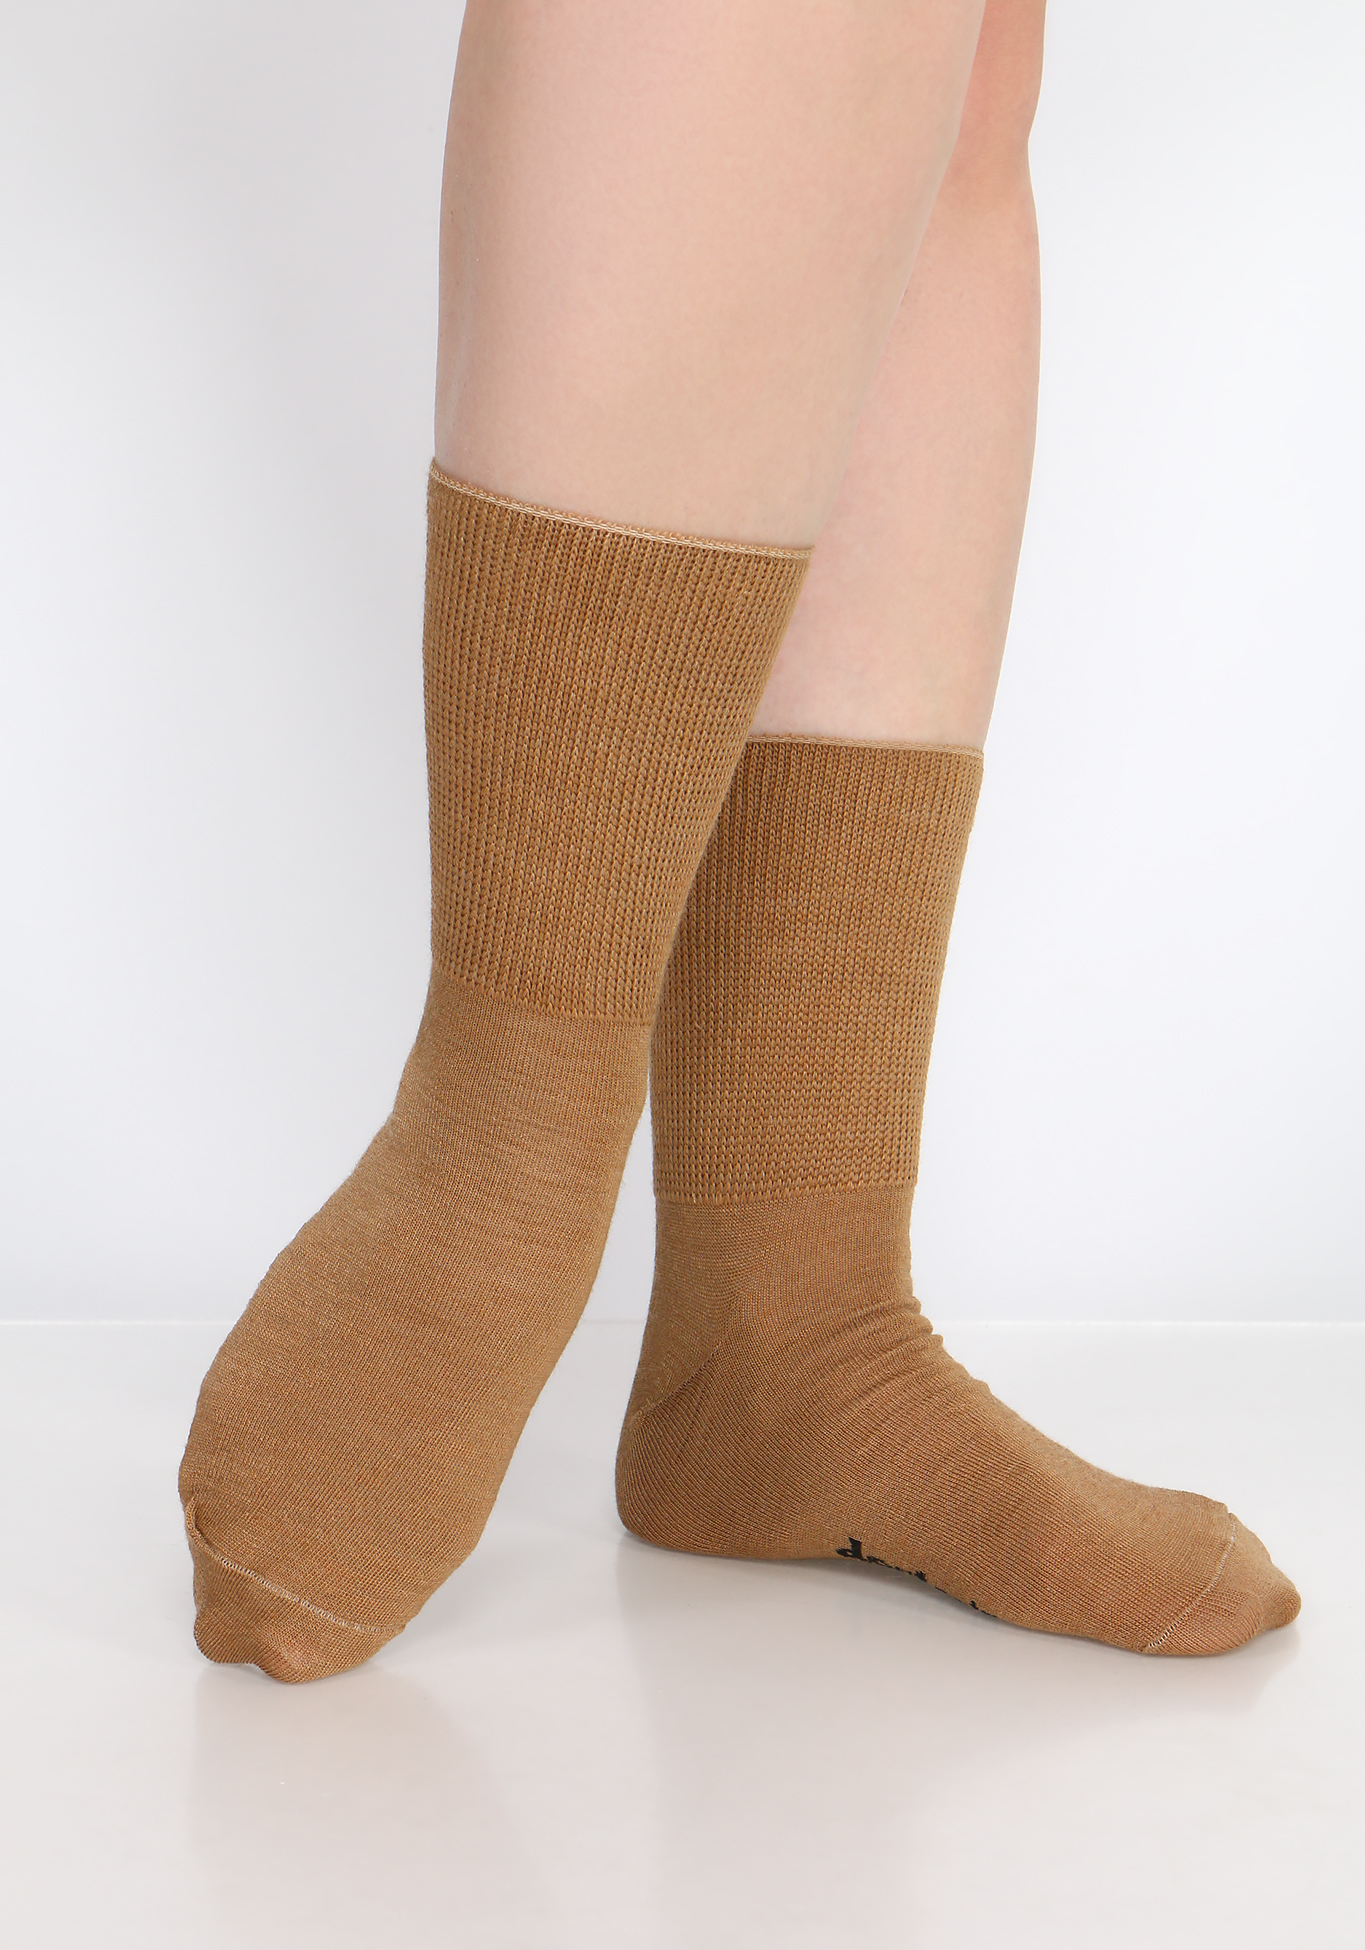 Носки на полную ногу из верблюжьей шерсти, 2 пары Центр Доктор, размер 44-45 - фото 4